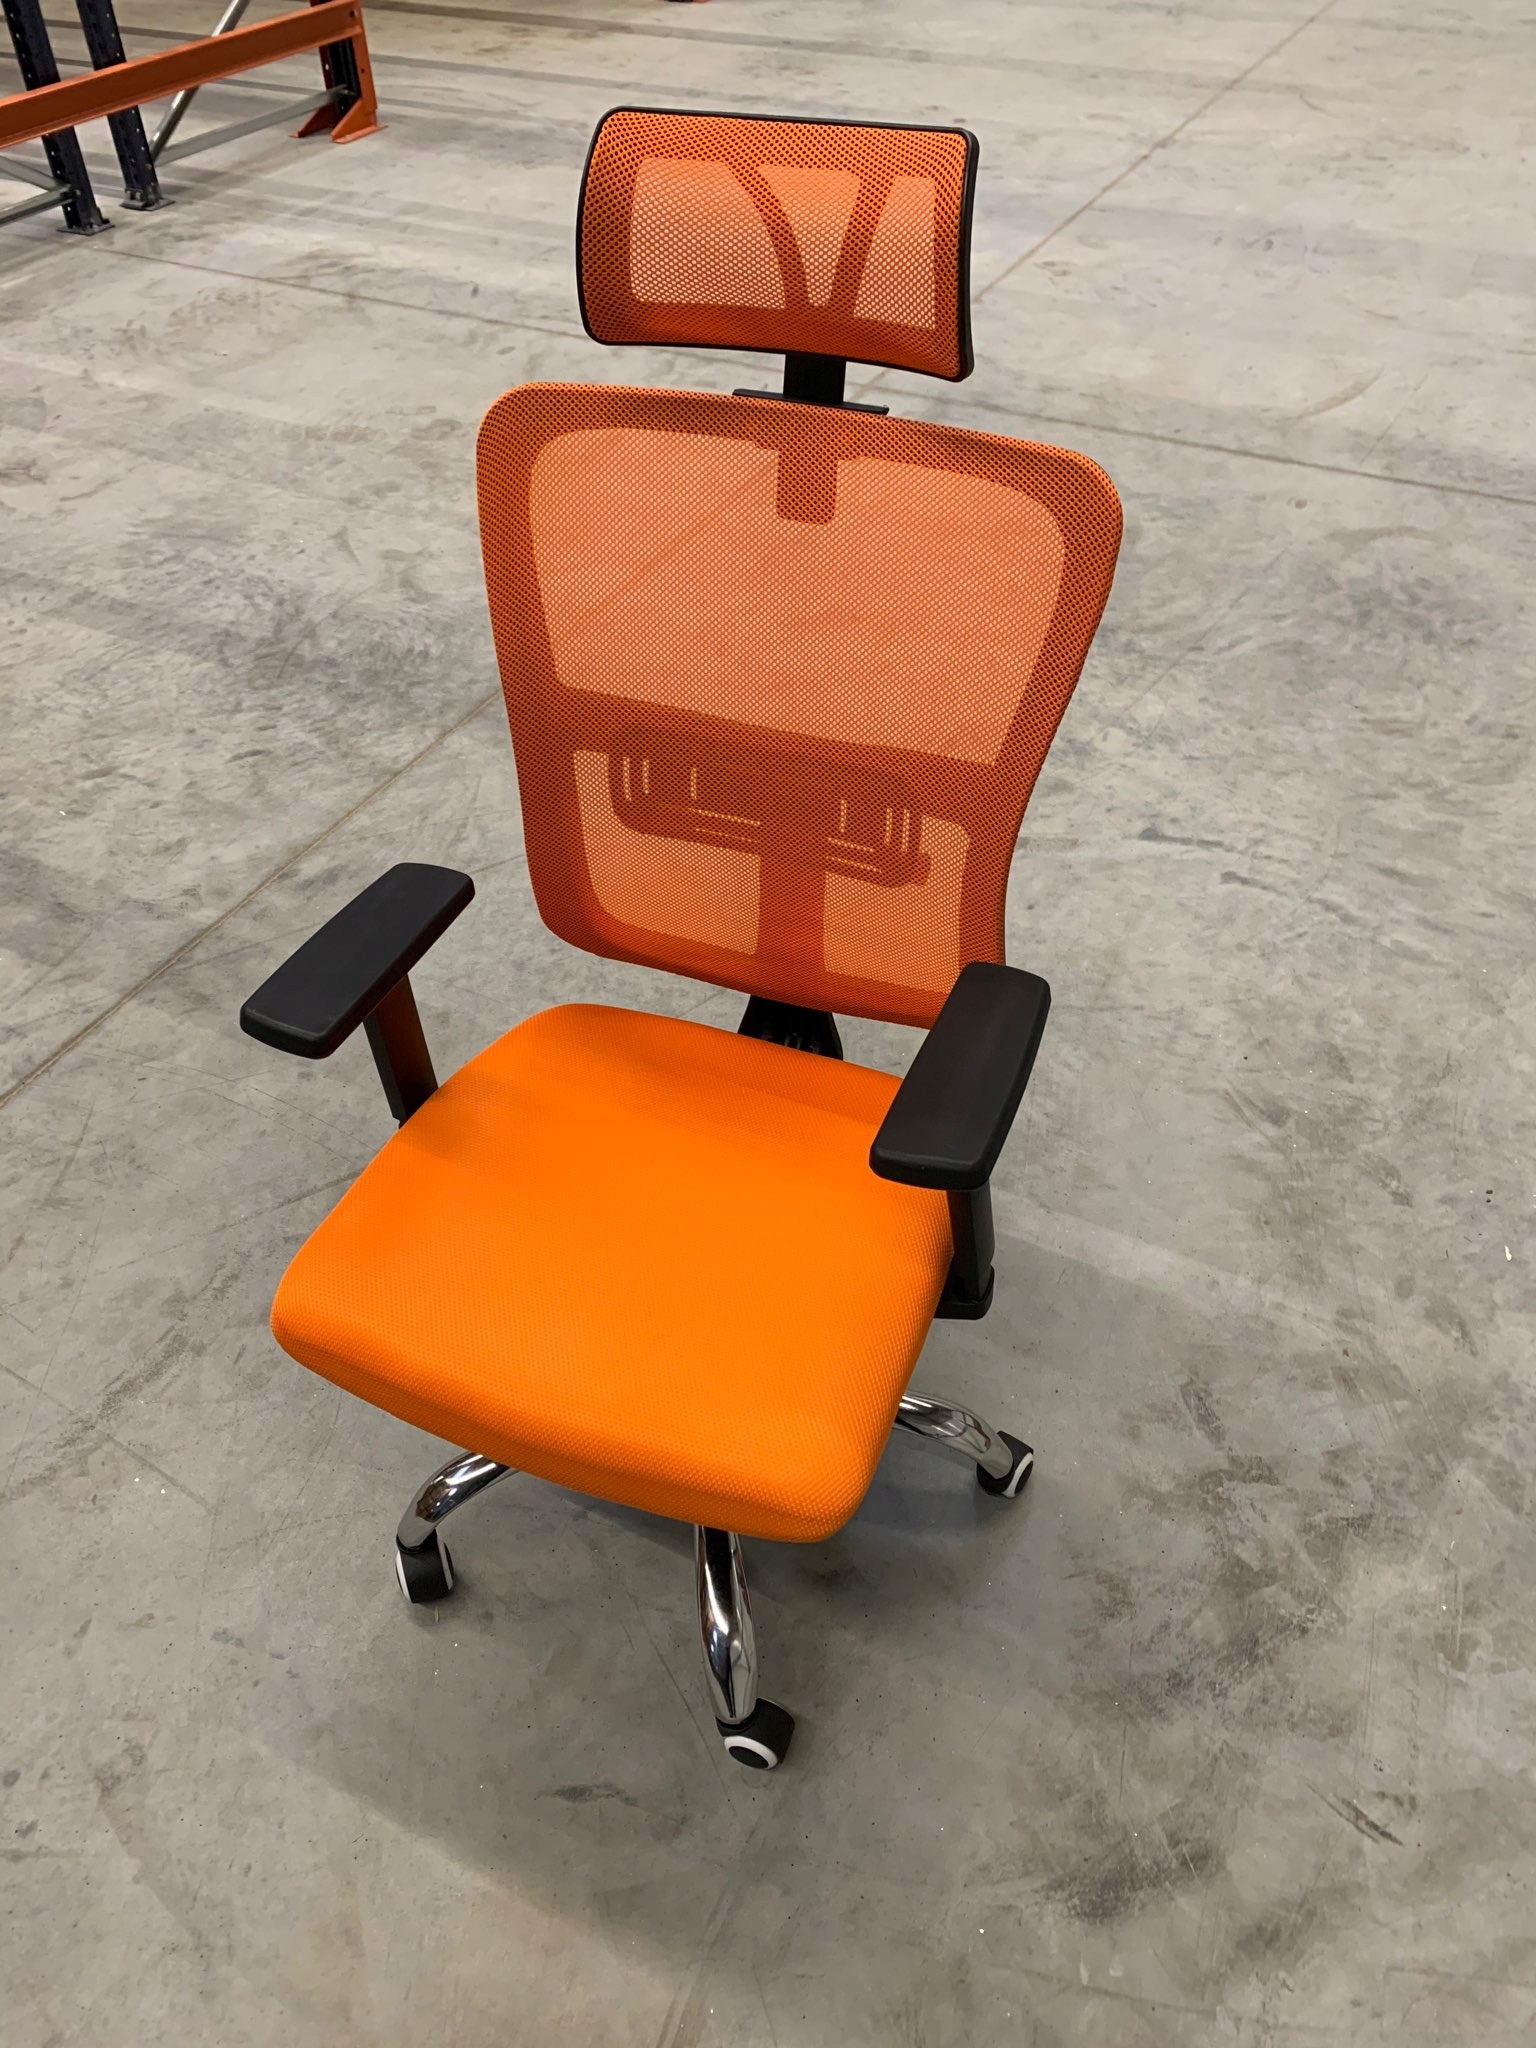 Pasukama biuro kėdė su galvos atrama (I132) Gamintojo kodas I132